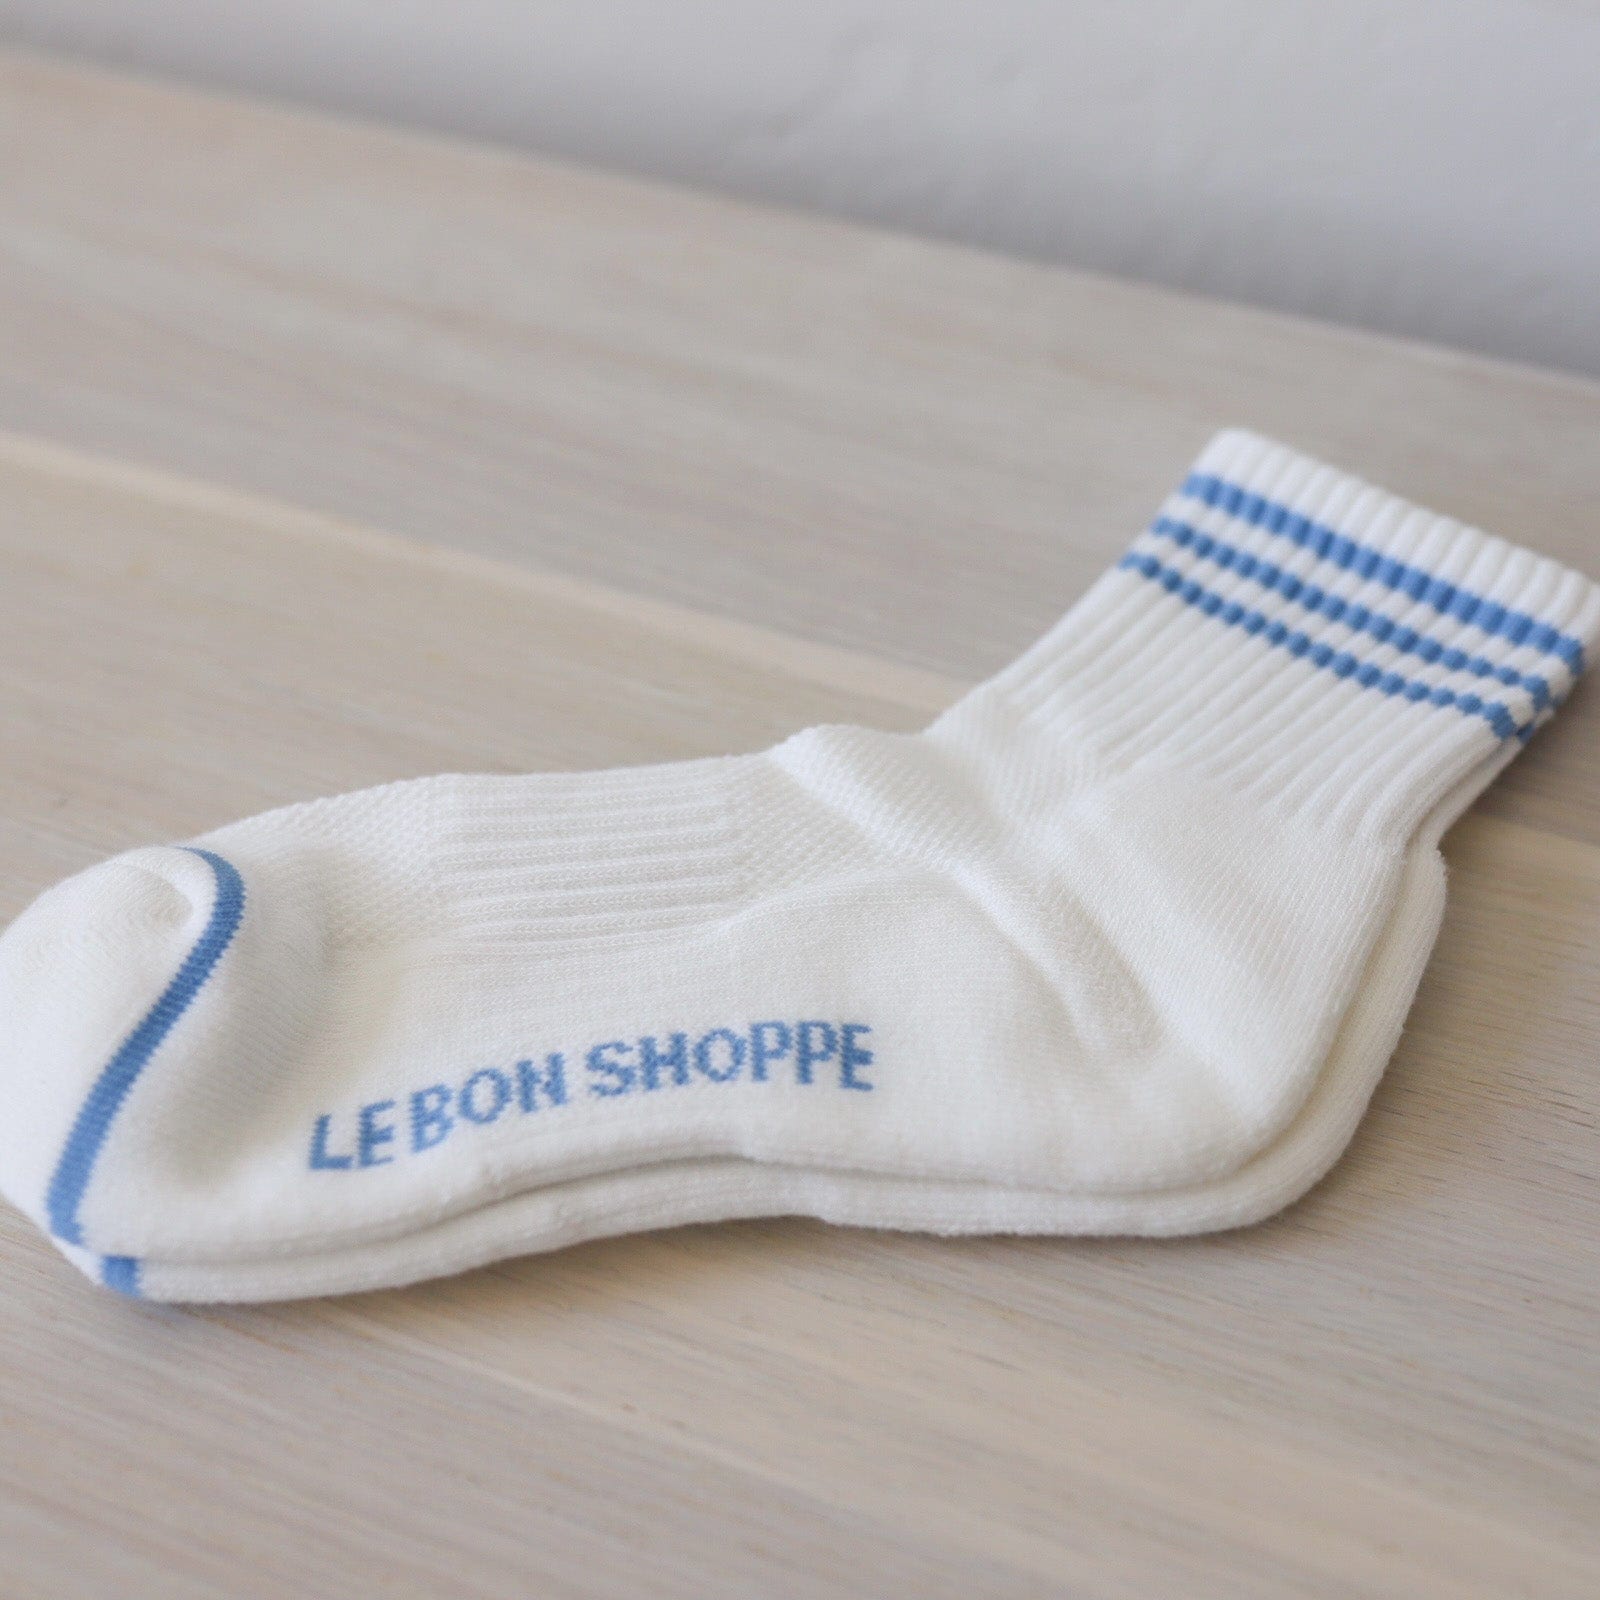 Le Bon Shoppe socks Ivory w/ Blue Le Bon "Girlfriend" Socks